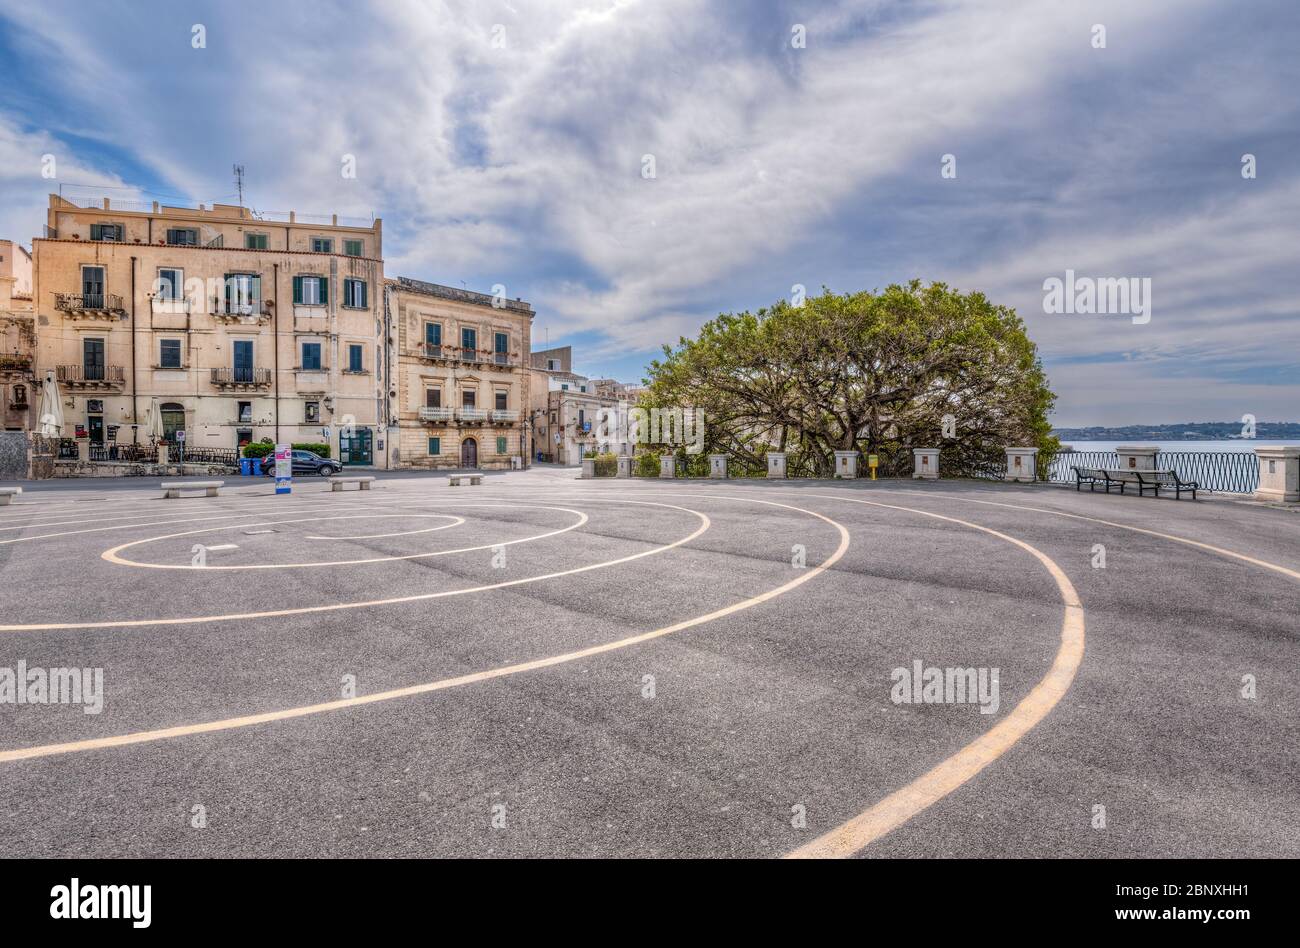 Siracusa Sicilia, la spirale archimedina disegnata nella piazza della fontana Aretusa di Ortigia. Foto Stock